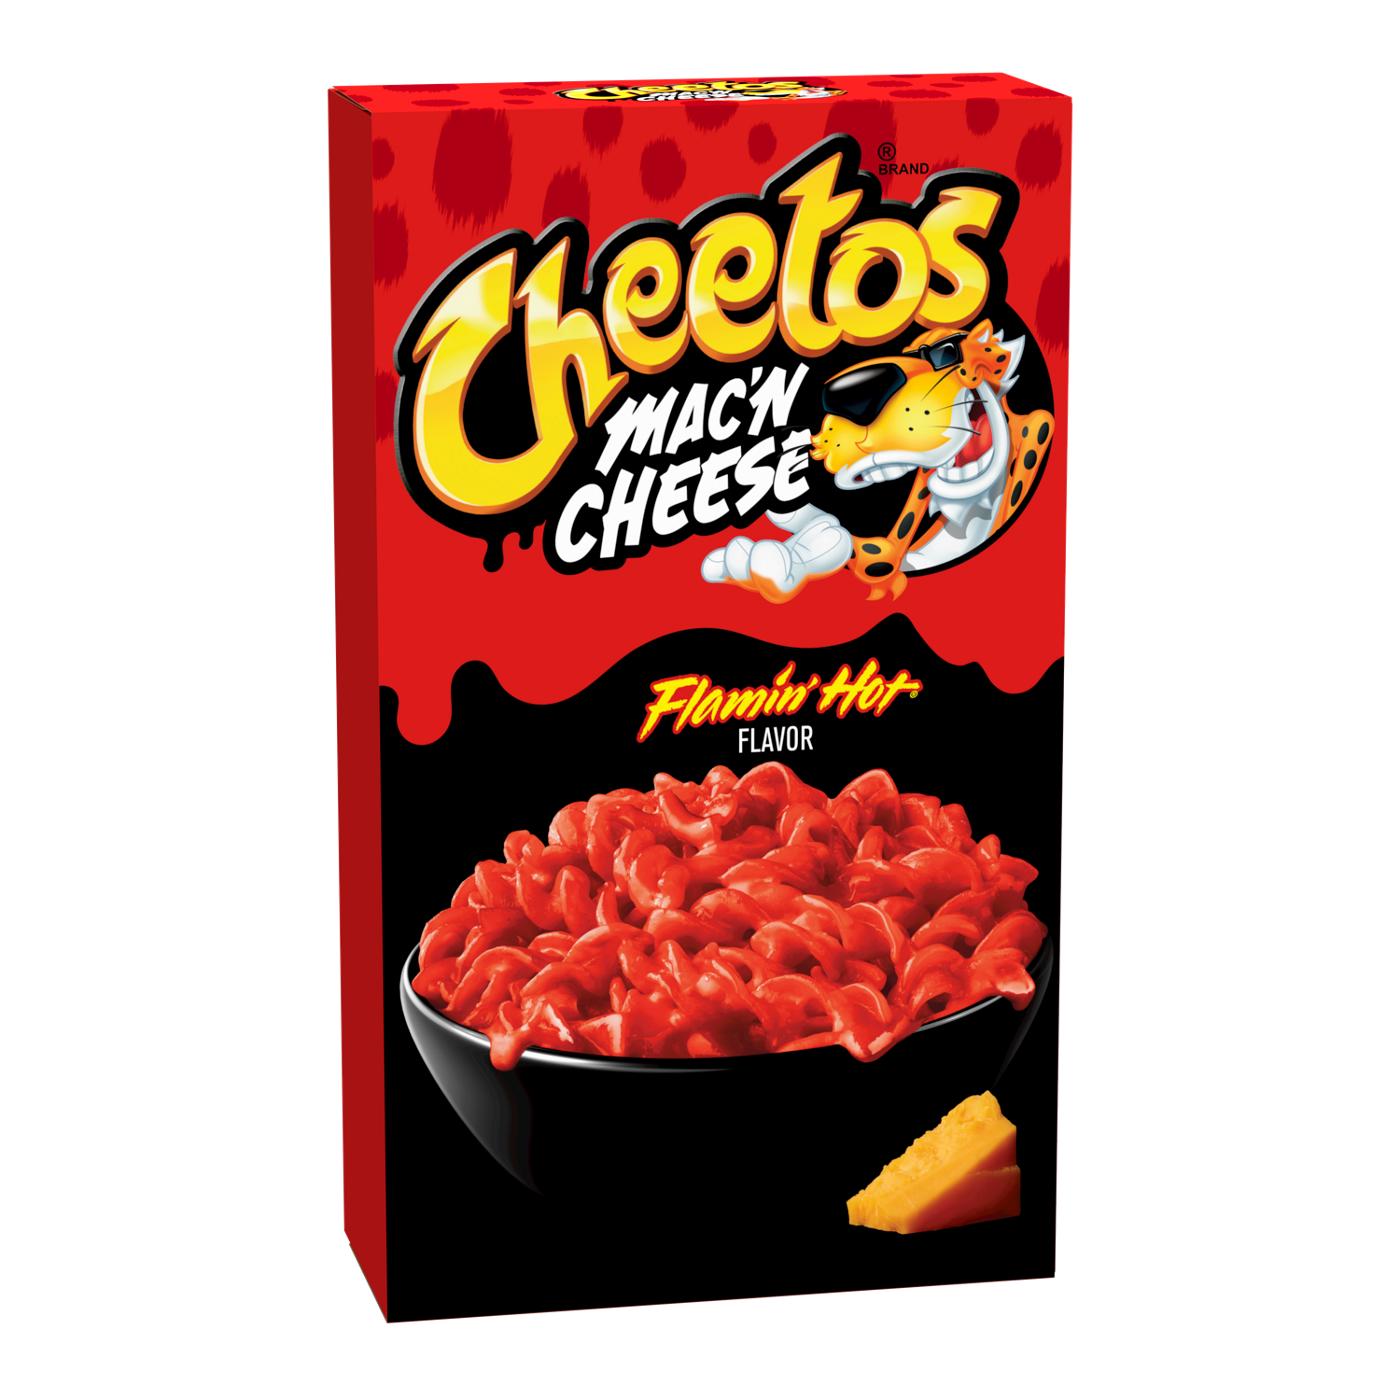 Cheetos Flamin' Hot Mac 'n Cheese; image 1 of 4